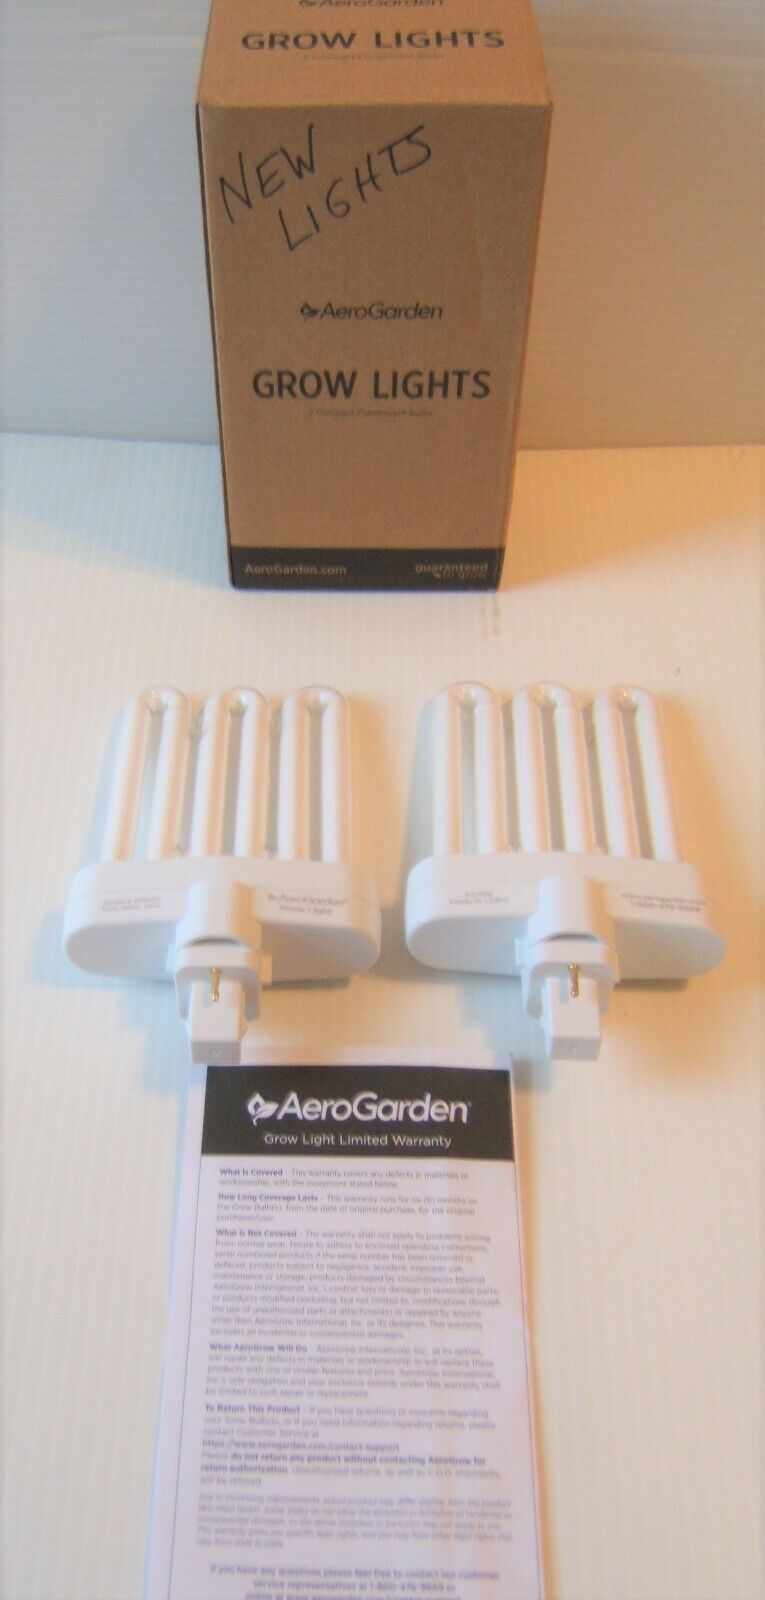 New 2 sets of AeroGarden Grow Lights compact fluorescent bulbs #100340